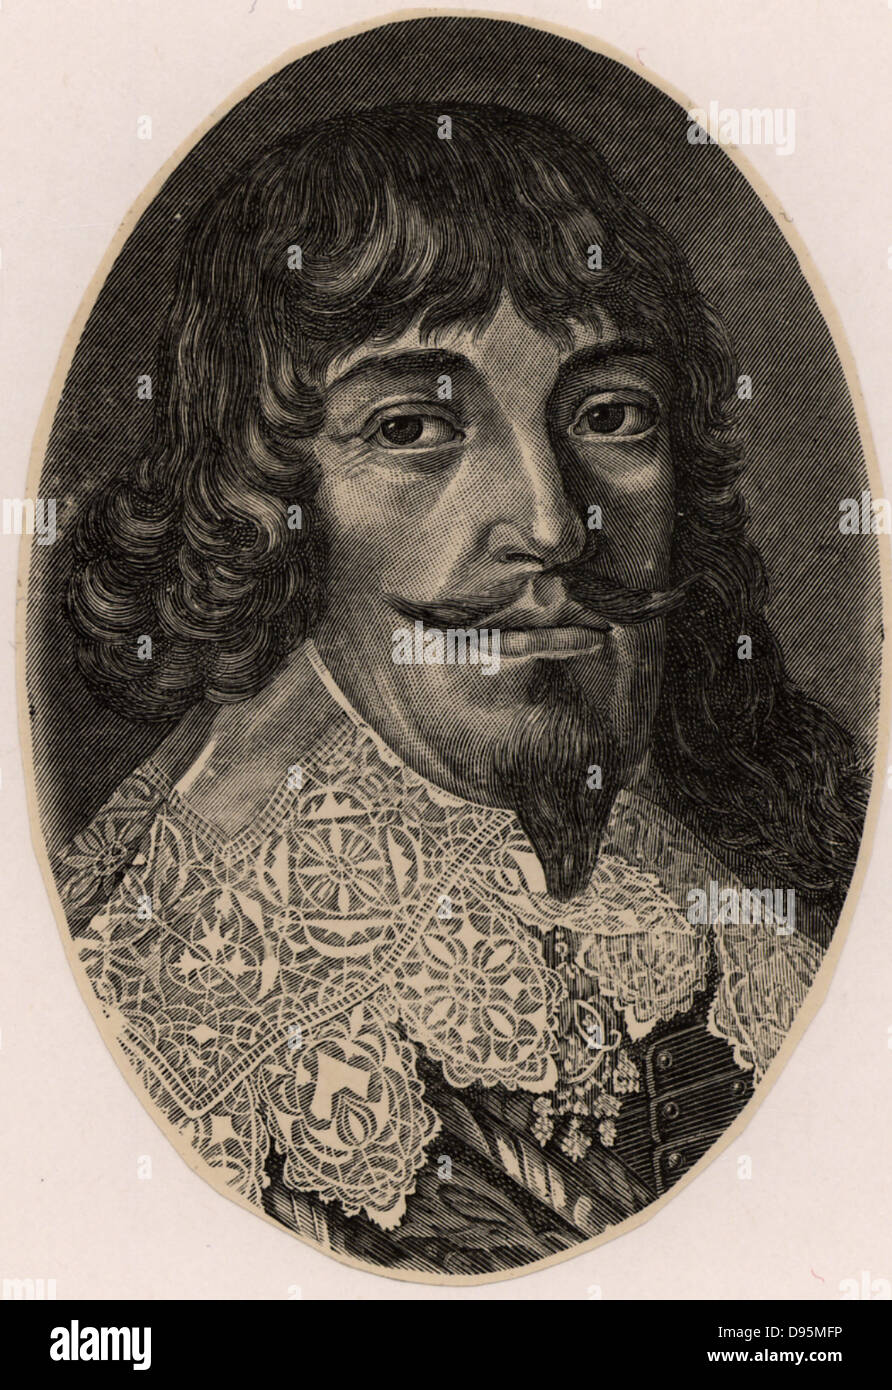 Bernhard, Herzog von Weimar (1604-1639). Im Dreißigjährigen Krieg (1618-1648) für die Evangelische Sache unter dem Banner von Gustavus Adolphus gekämpft. Gravur. Stockfoto